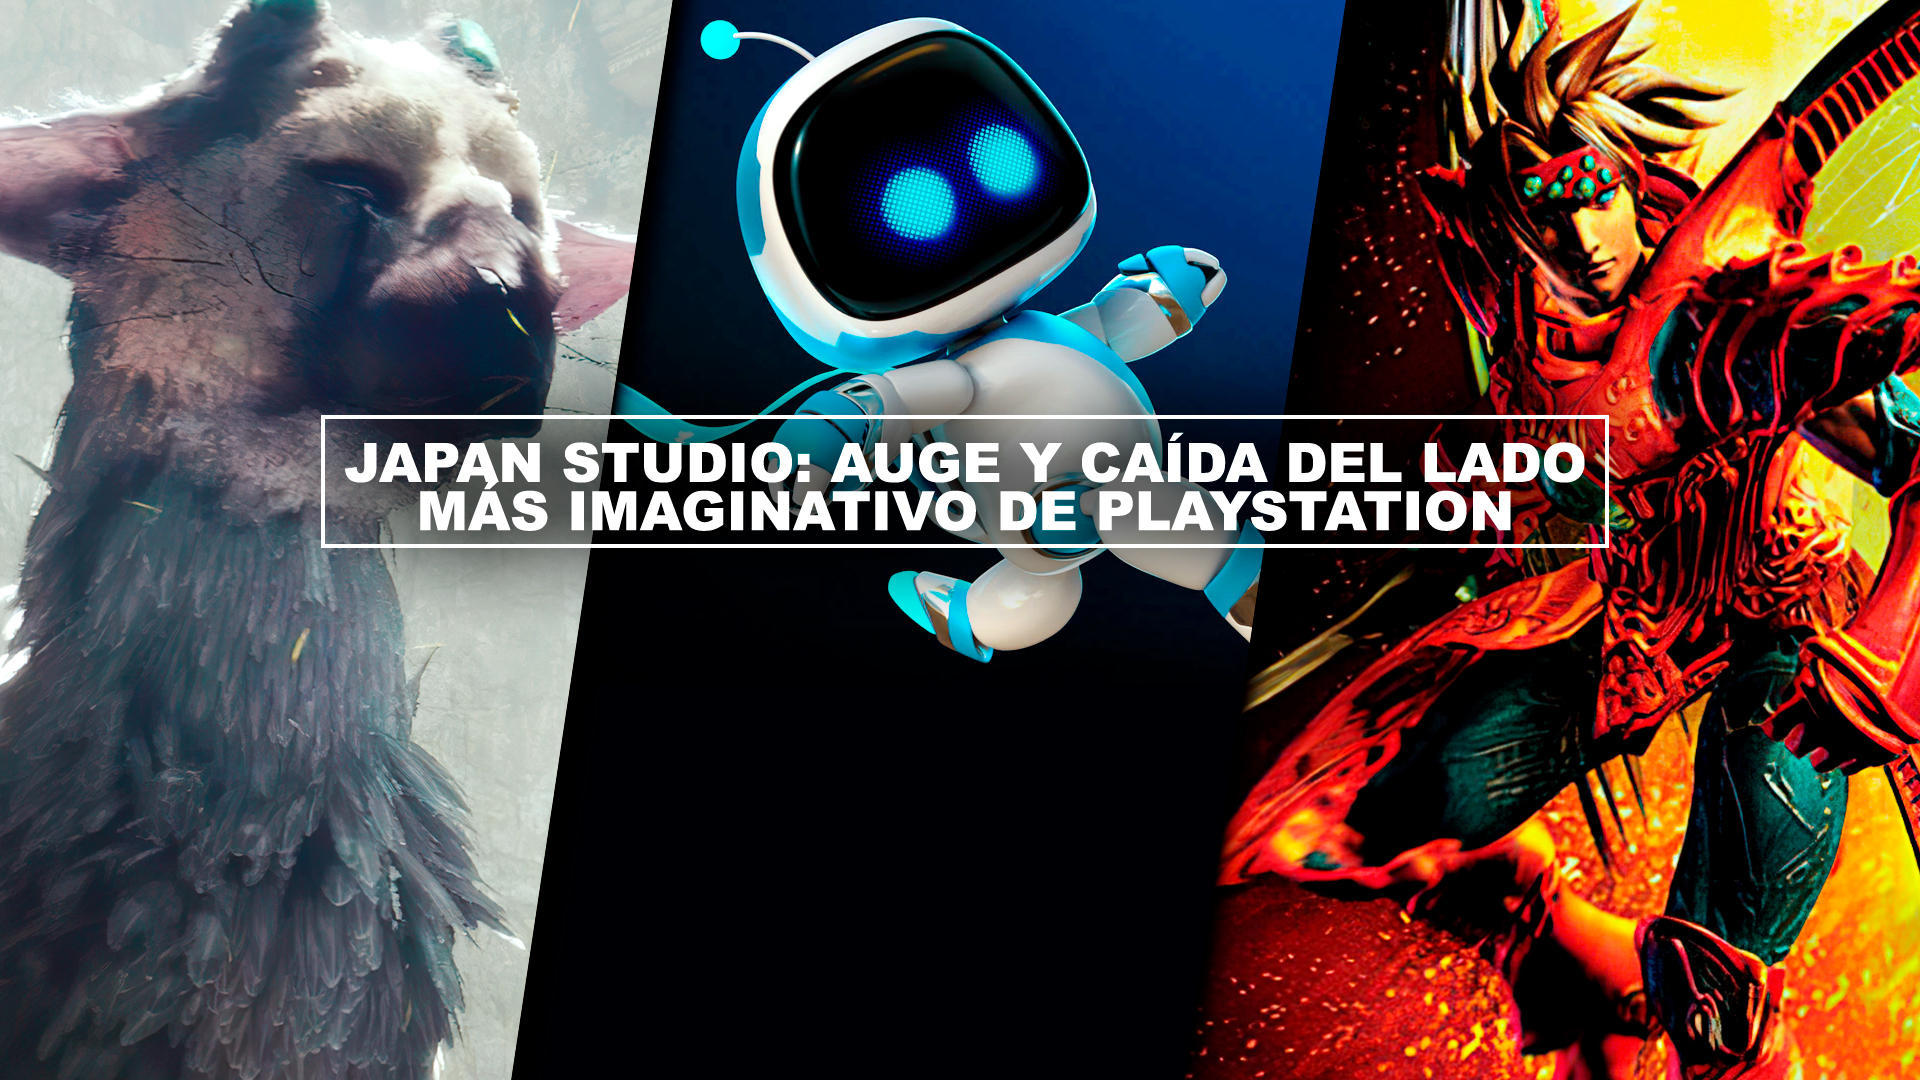 Japan Studio: Auge y cada del lado ms imaginativo de PlayStation